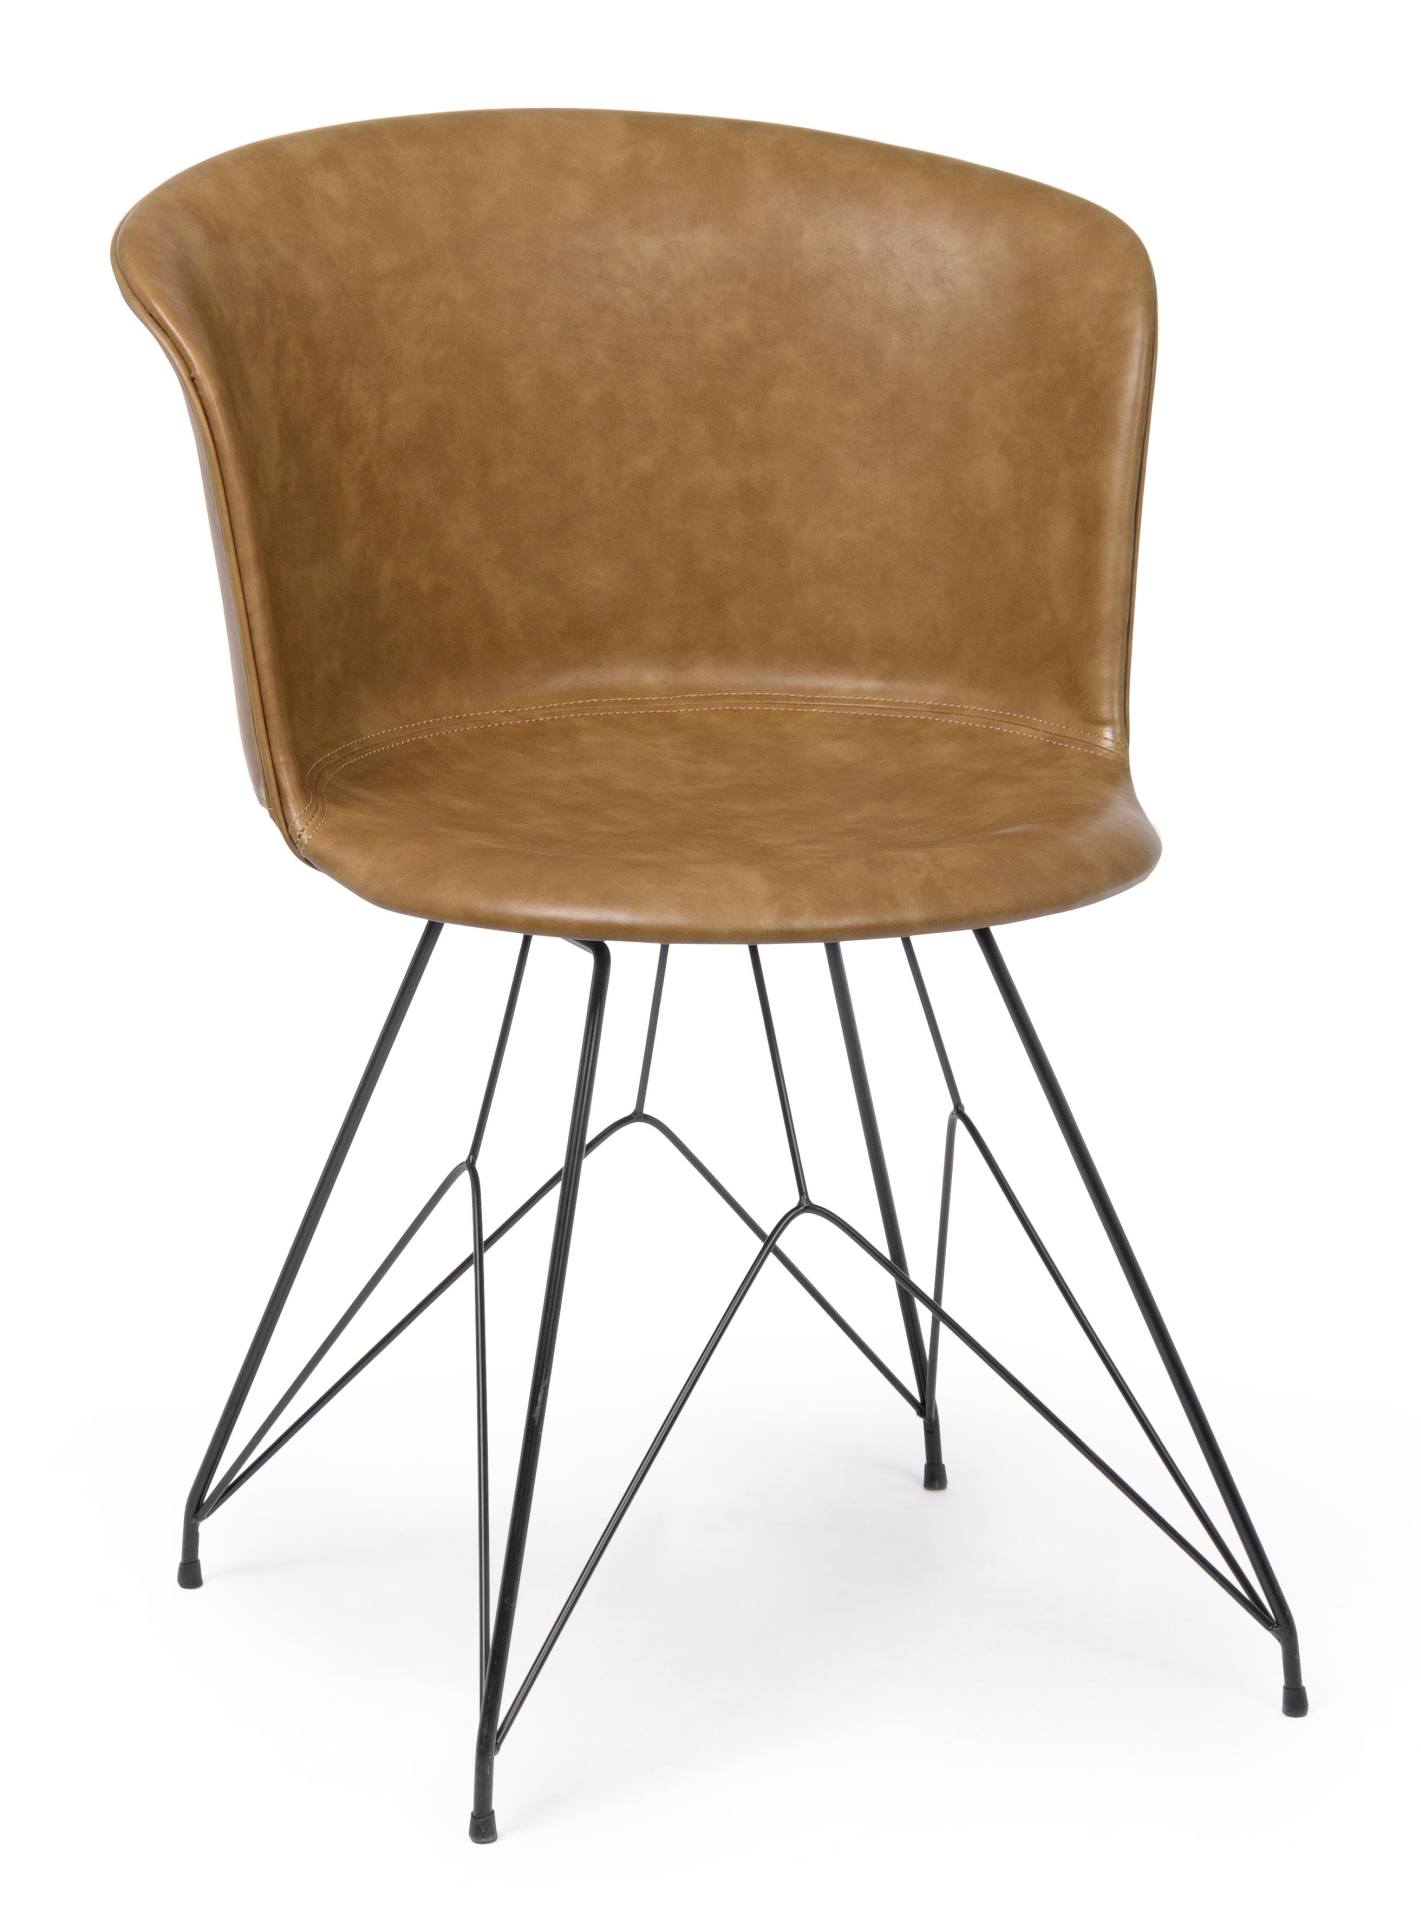 Der Esszimmerstuhl Loft überzeugt mit seinem modernem Design. Gefertigt wurde der Stuhl aus Kunstleder, welches einen Cognac Farbton besitzt. Das Gestell ist aus Metall und ist Schwarz. Die Sitzhöhe beträgt 45 cm.